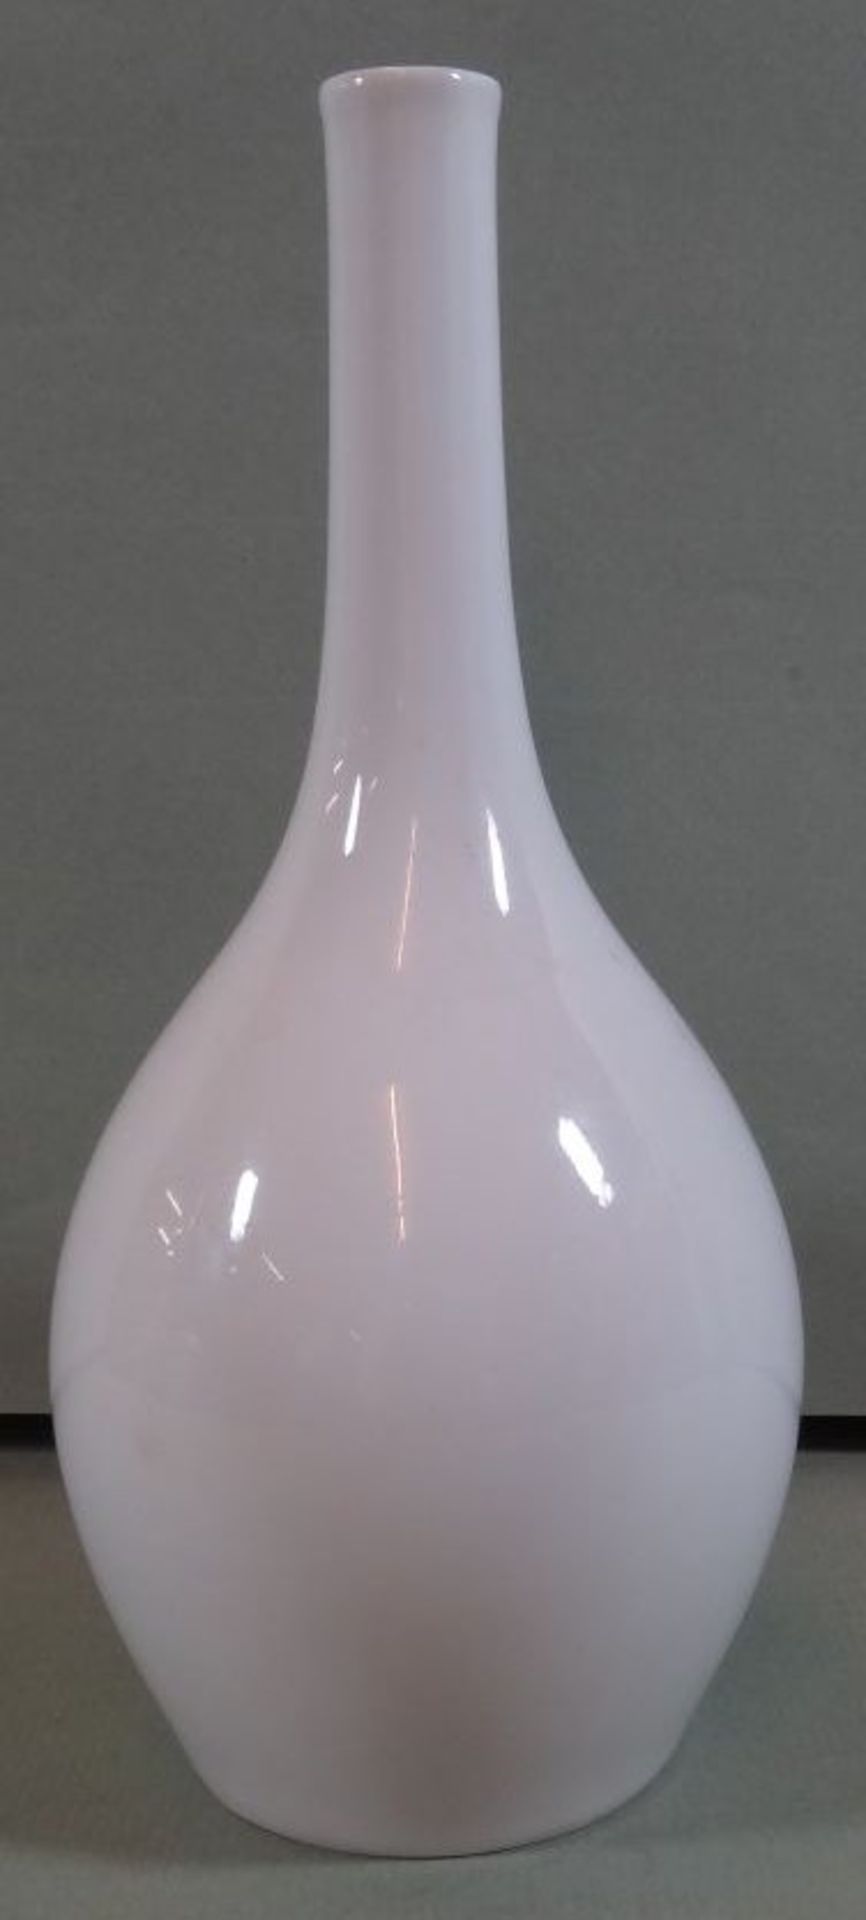 Keulen-Vase "KPM" Berlin, weiss, H-20 cm